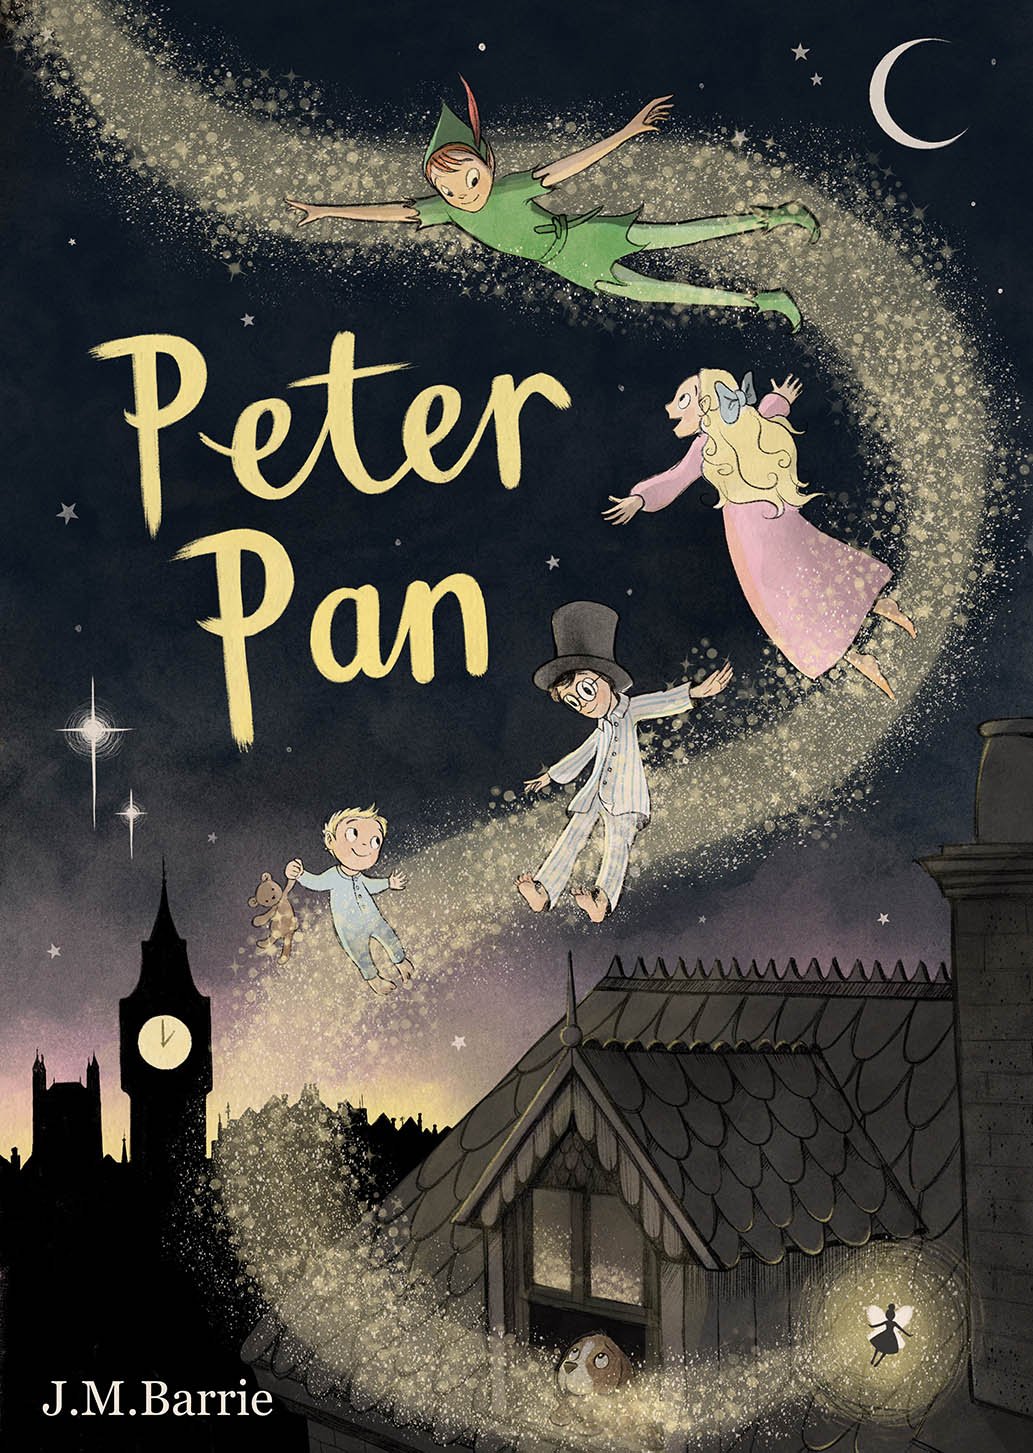 Peter Pan - Mock Book Cover